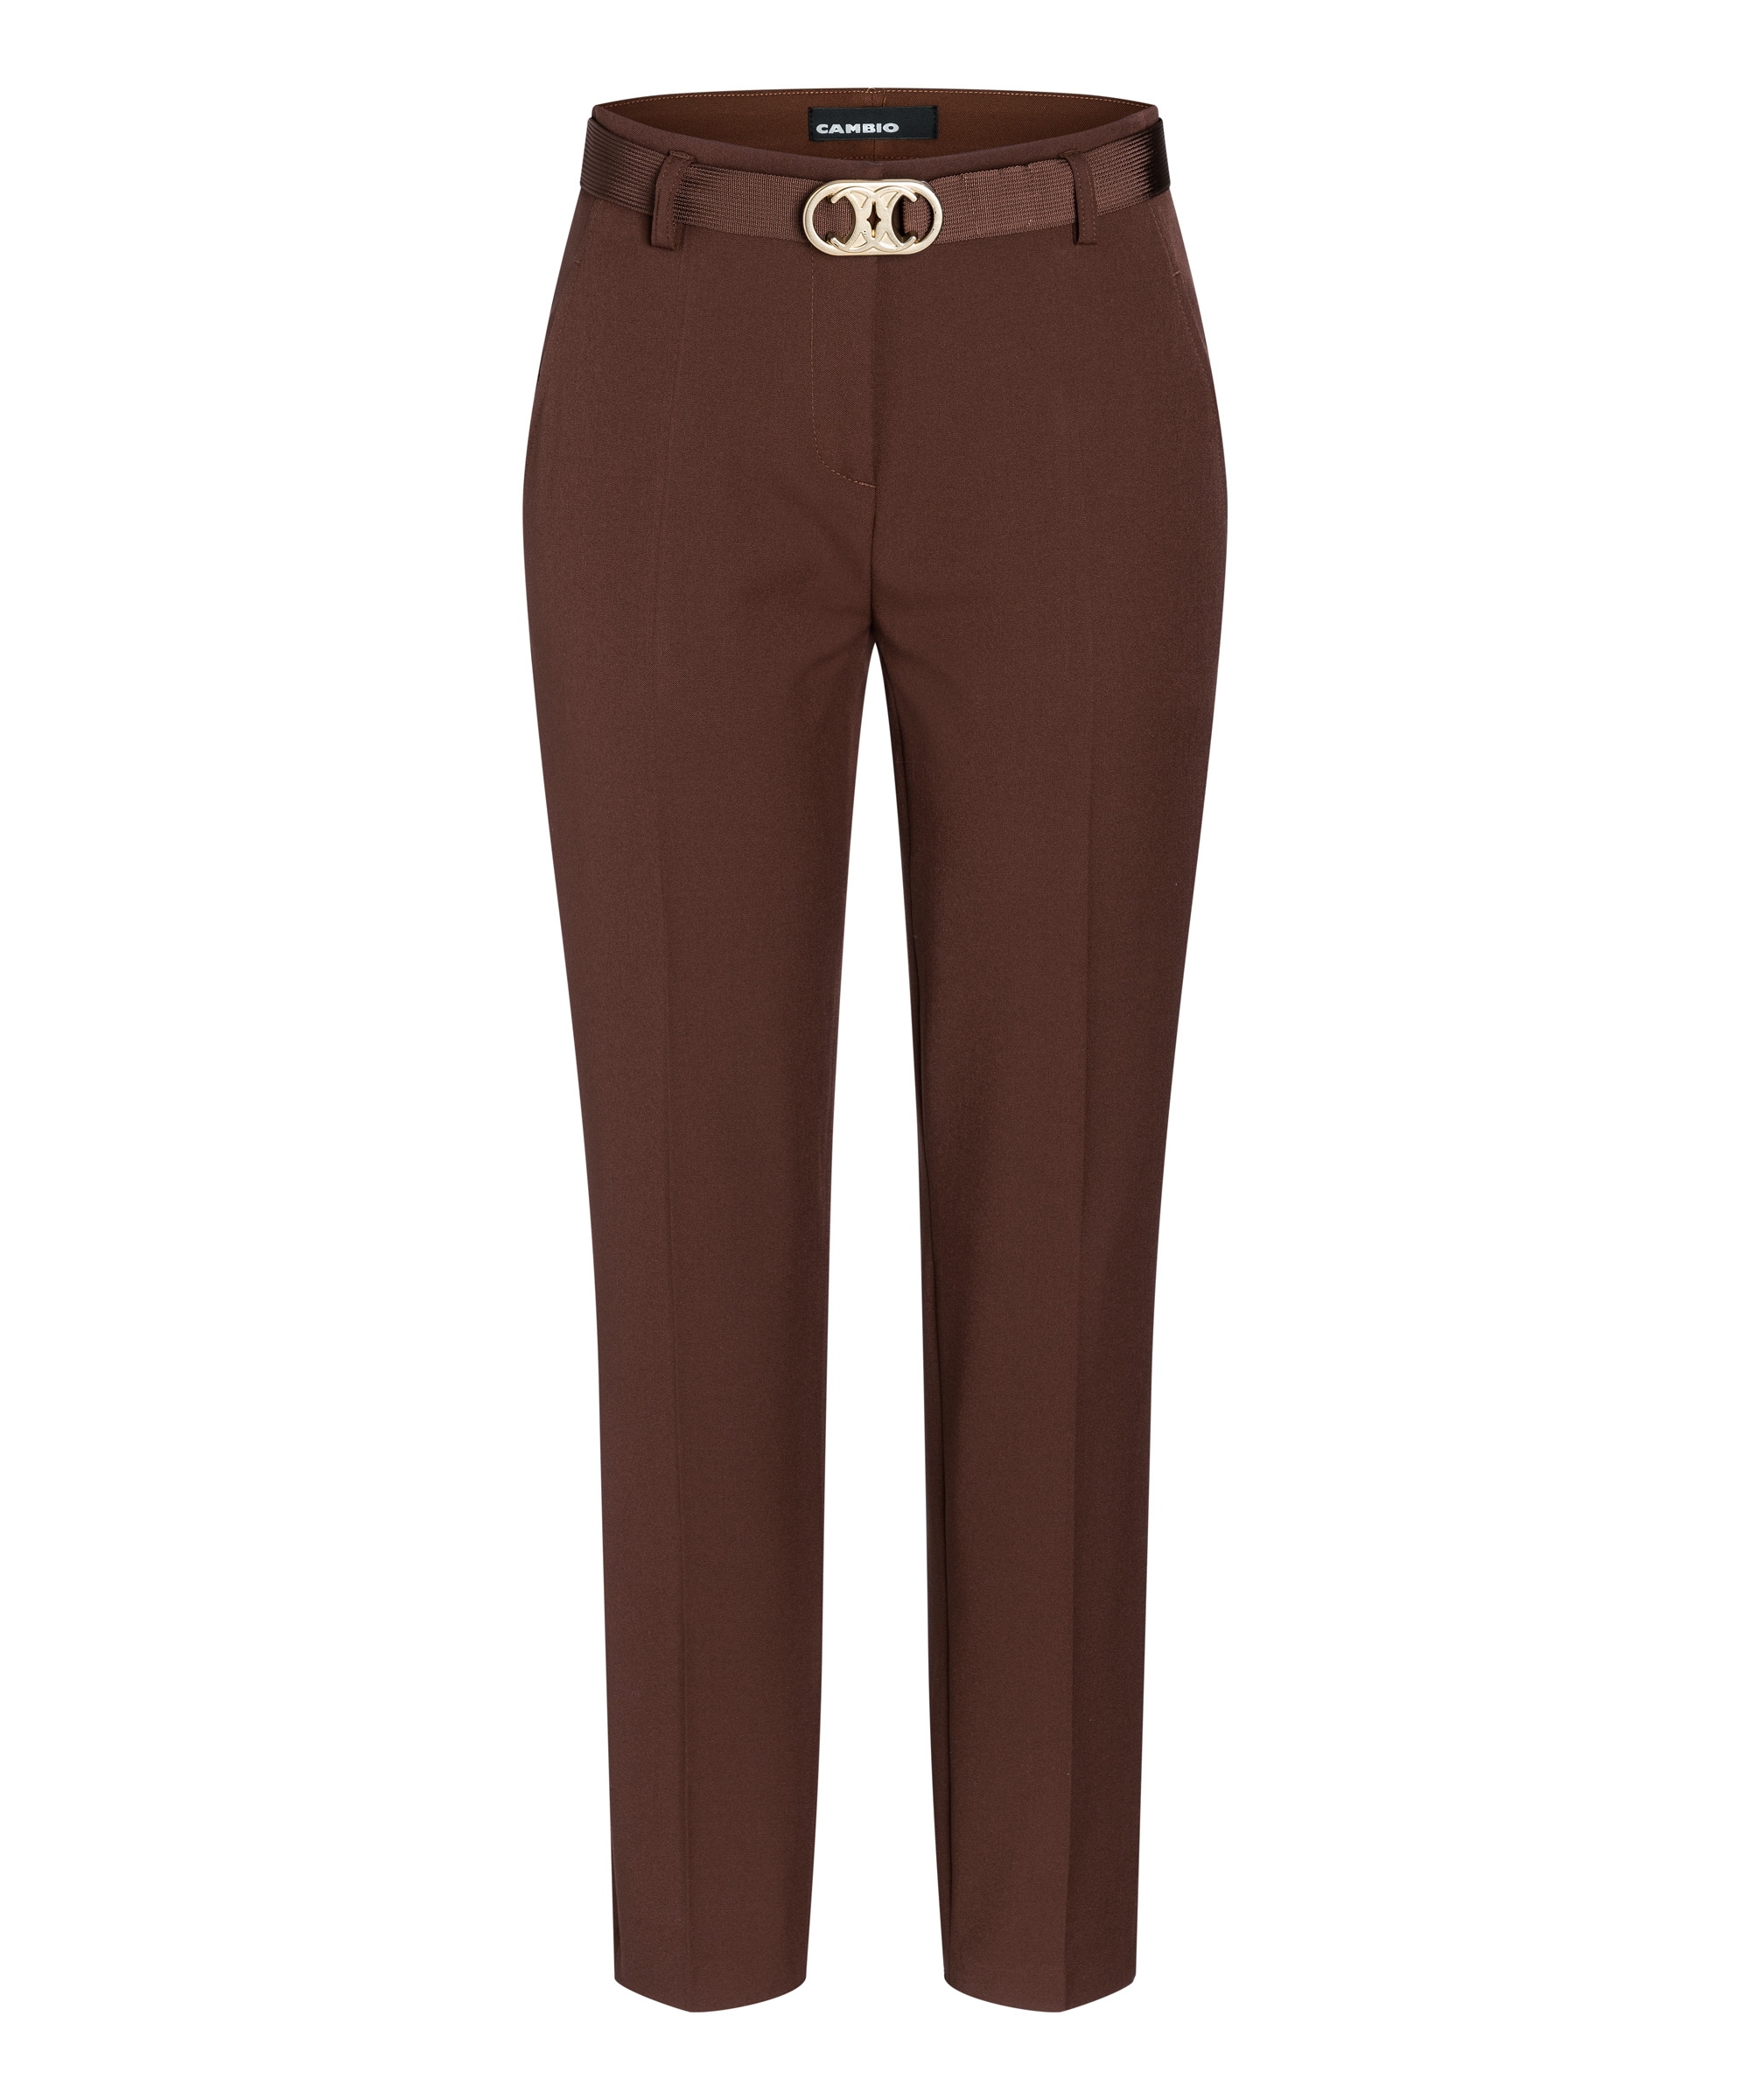 Spodnie w kant, kieszenie, w pasie na zamek i guzik, materiałowy pasek złotą klamrą, kolor rudo-brązowy Cambio Selina 0392-10-6047-781